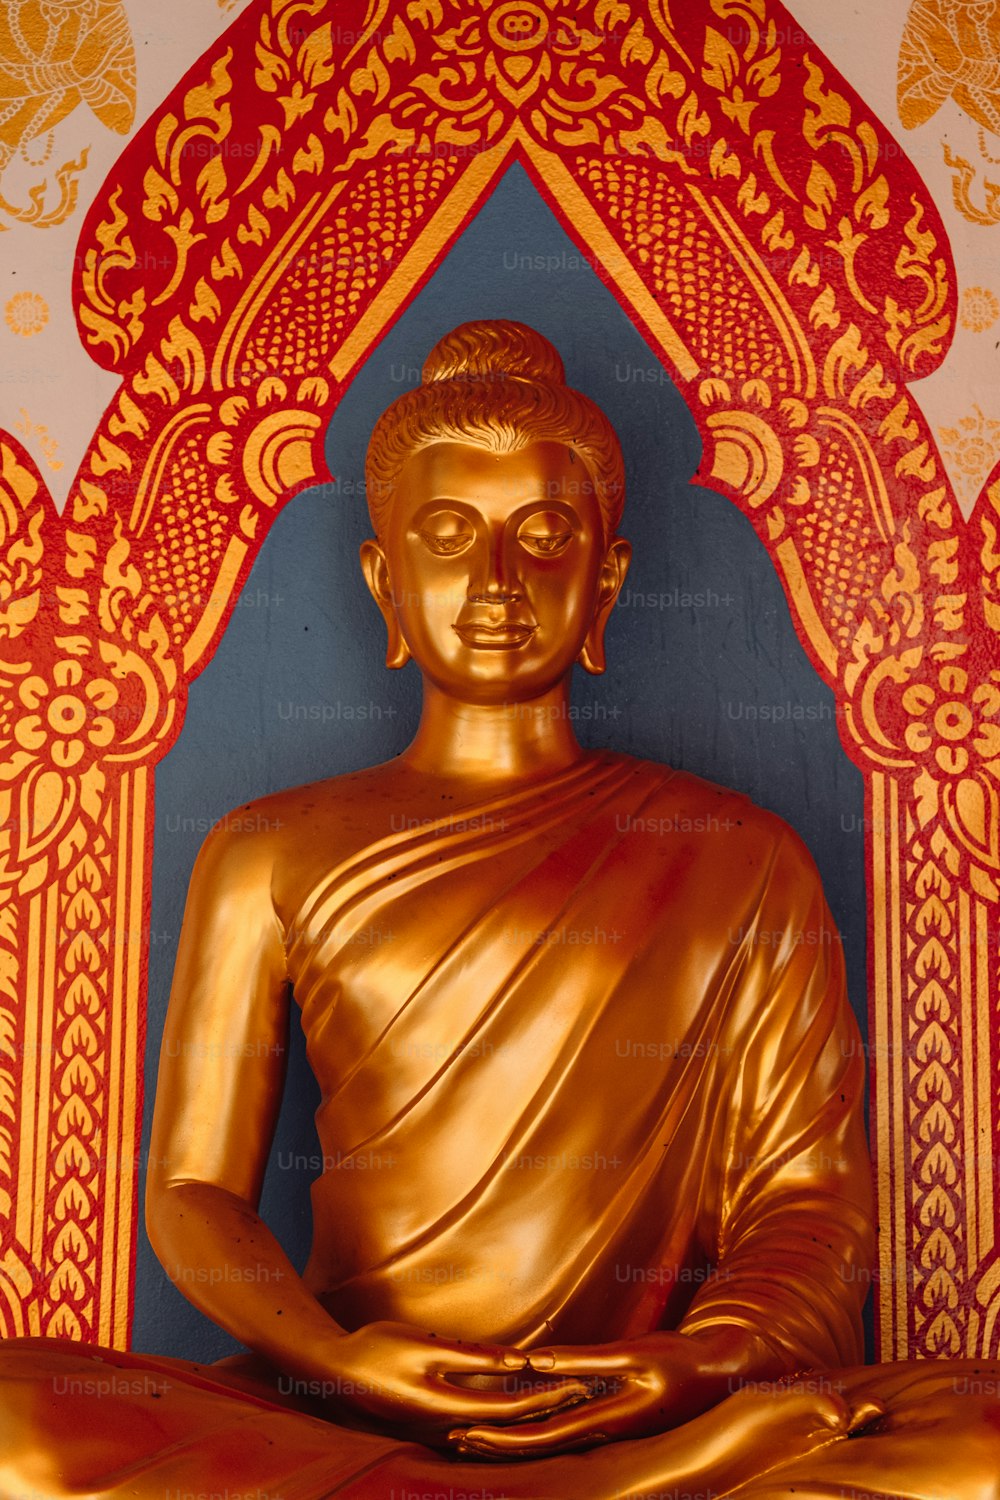 Una statua dorata del Buddha seduta di fronte a un muro rosso e oro